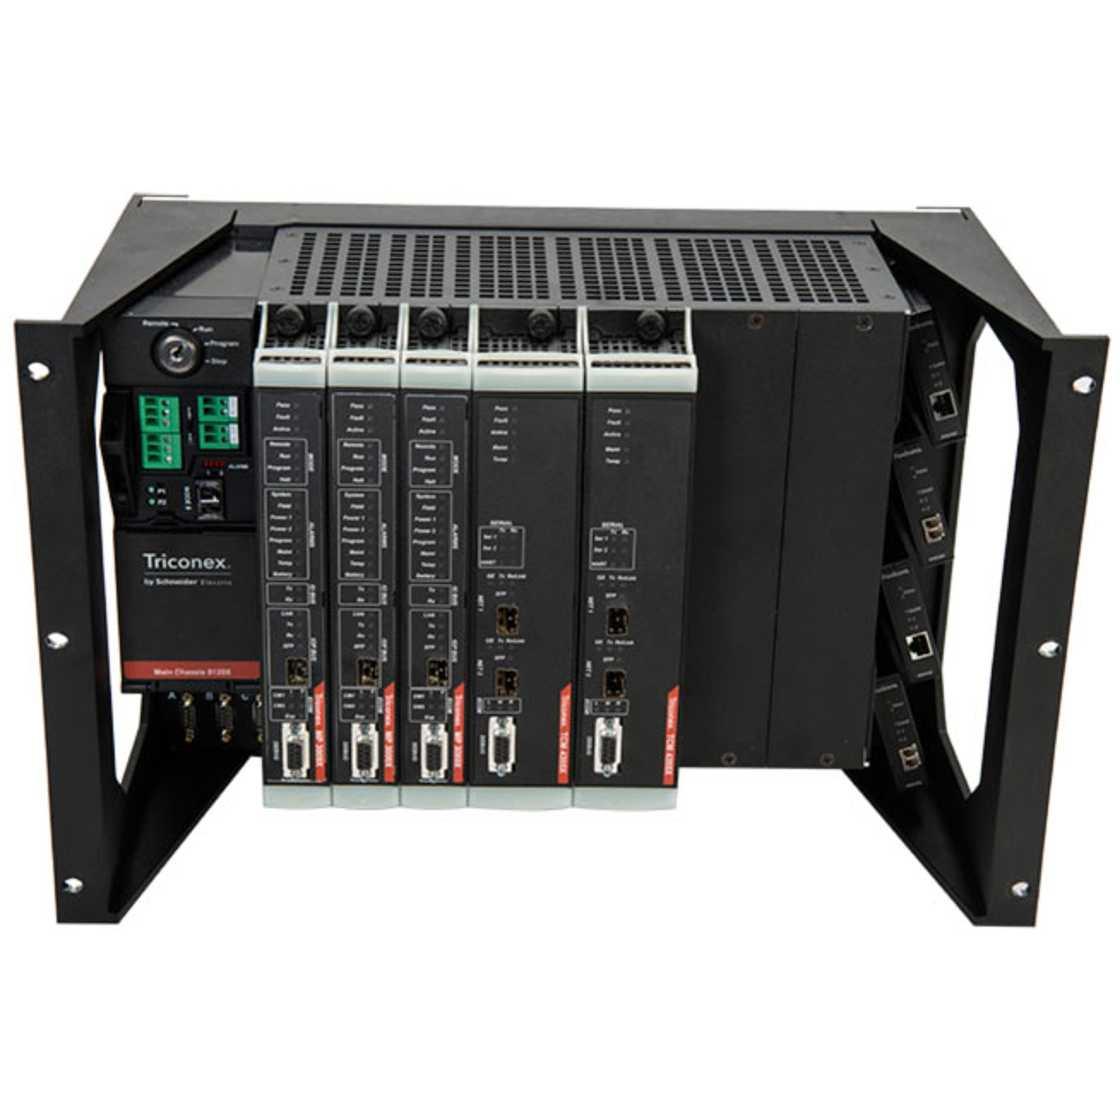 英维思TRICONEX 3009 控制处理器模块全新现货质量保障原装正品出售欢迎询价议价